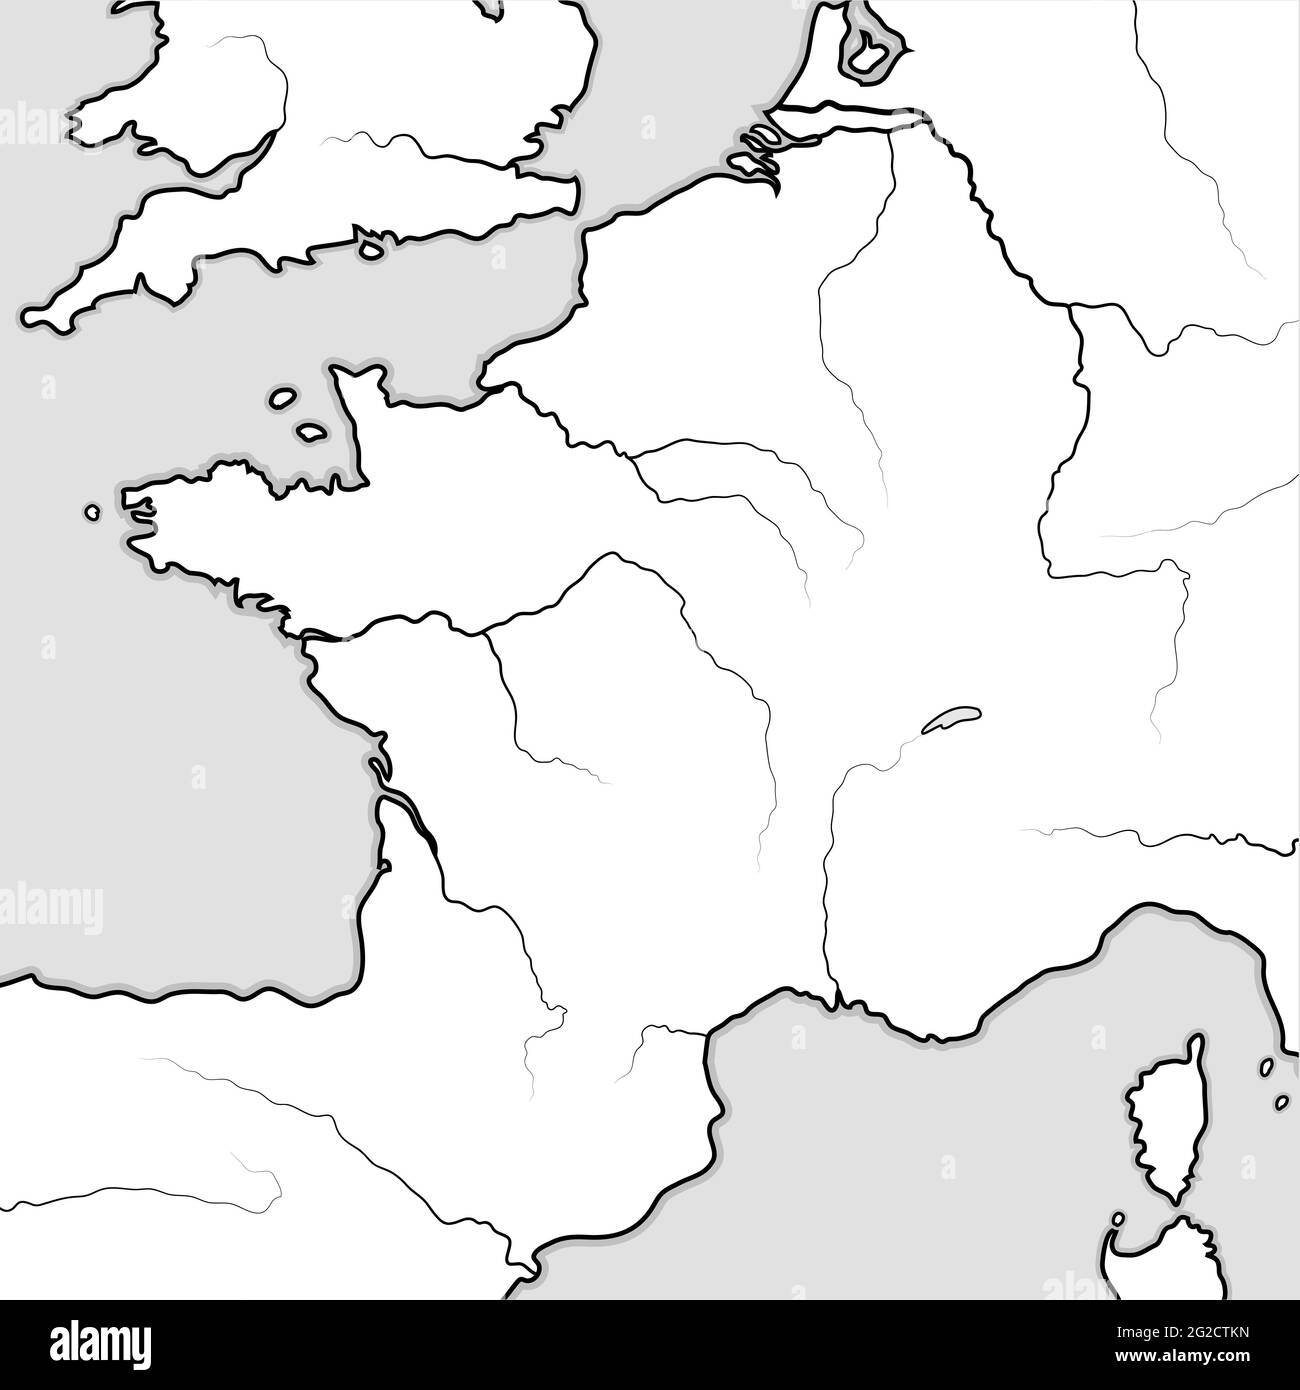 Mappa delle terre FRANCESI: Francia, Provenza, Normandia, Occitanie, Aquitania, Lorena. Grafico geografico. Foto Stock